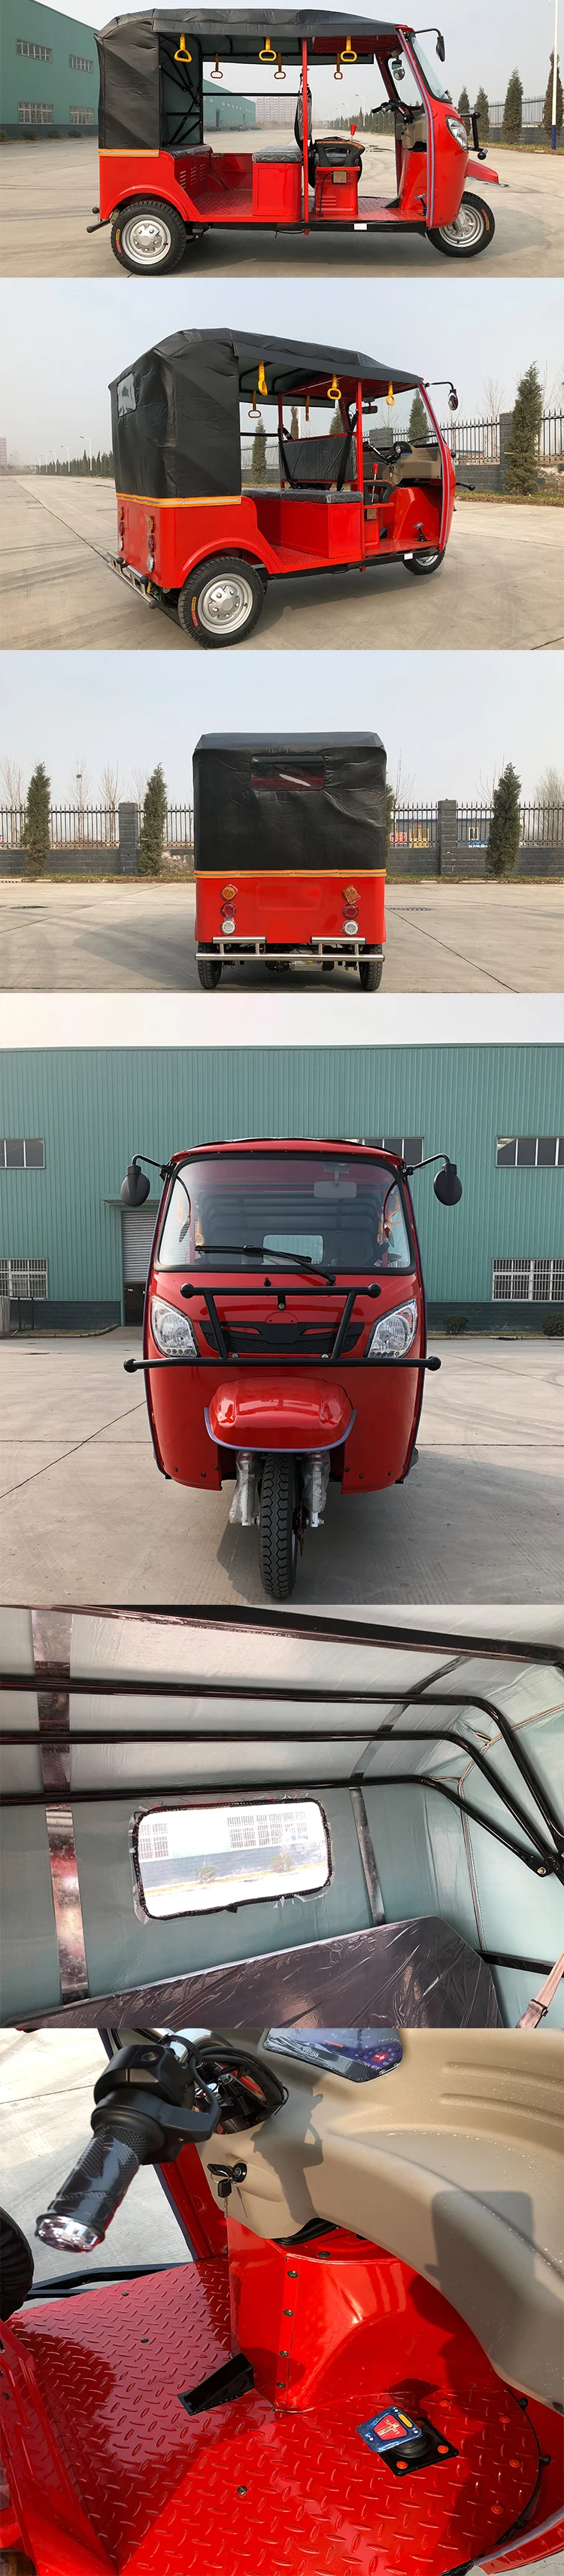 China Manufacturing Tuk Tuk Bajaj Three Wheeler Auto Rickshaw